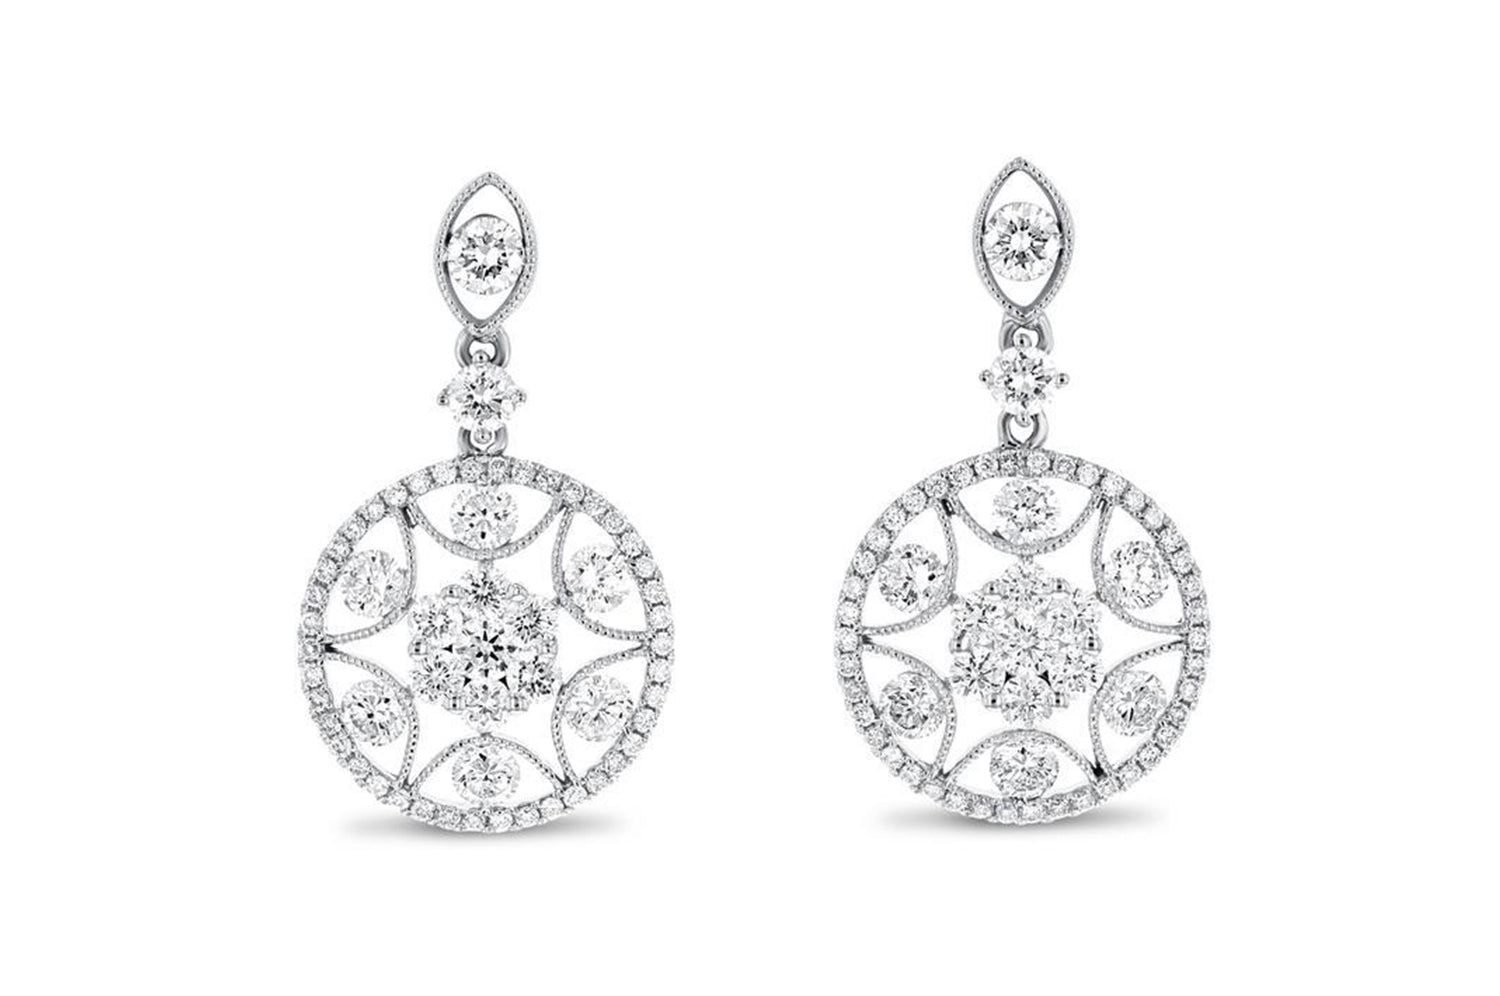 'Celeste' 18K White Gold Diamond Earrings, 1.04 Carats